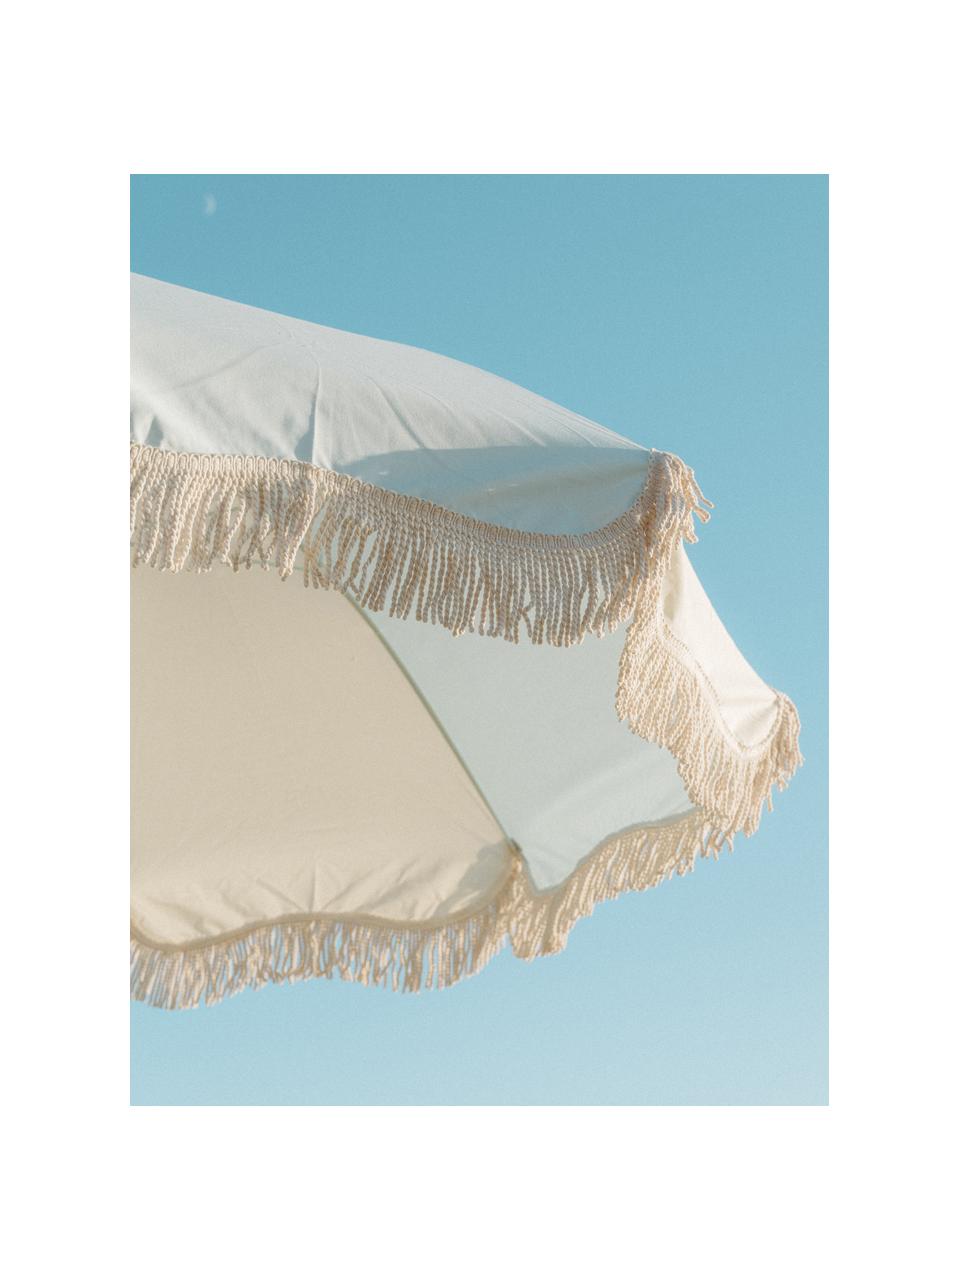 Sonnenschirm Retro mit Fransen, abknickbar, Gestell: Holz, laminiert, Fransen: Baumwolle, Hellblau, Cremeweiß, Ø 180 x H 230 cm